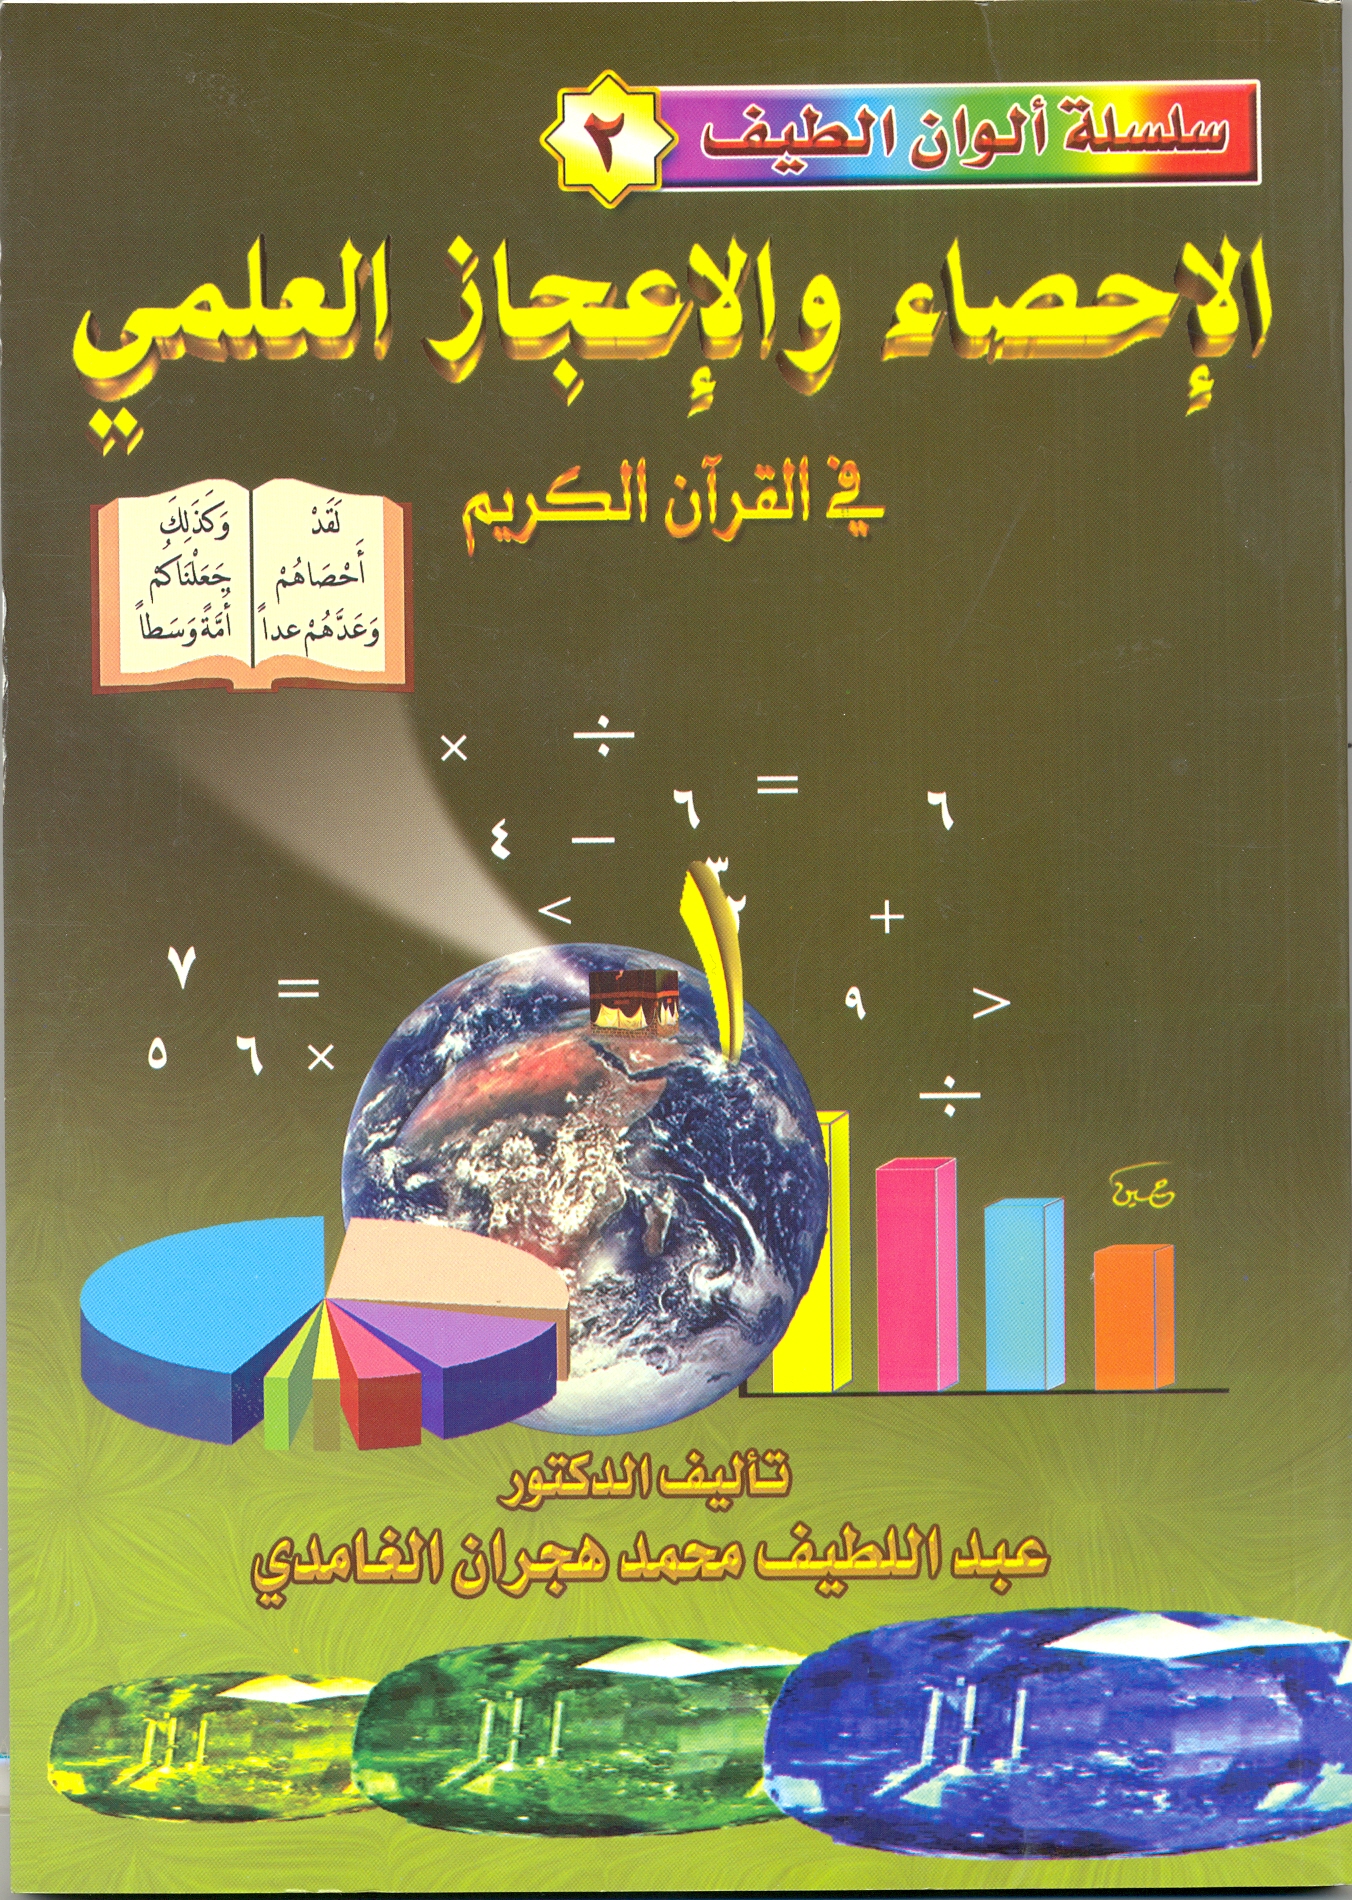 الإحصاء والإعجاز العلمي في القرآن الكريم